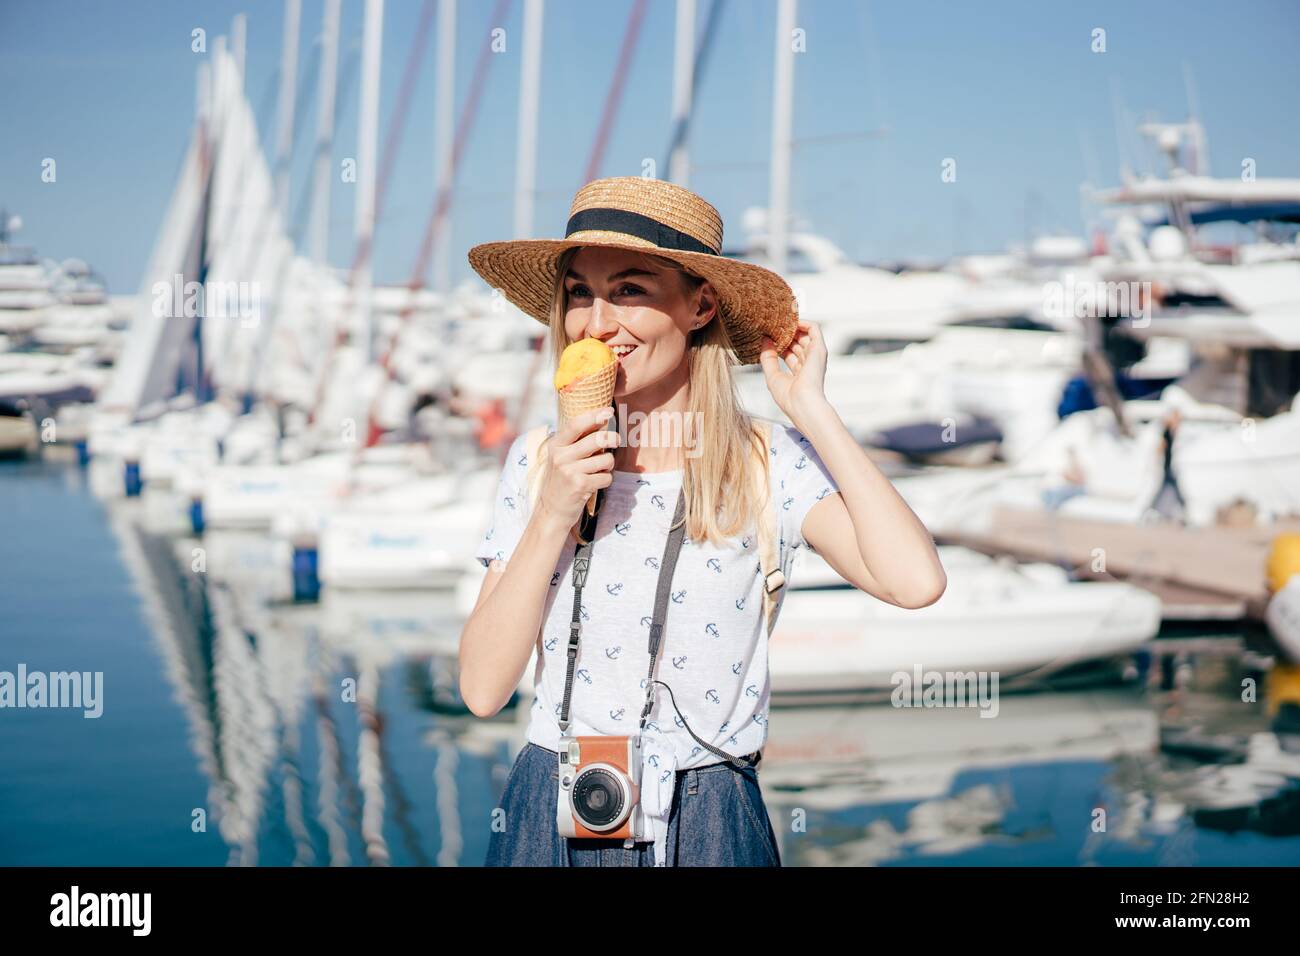 Lustiges Porträt einer Frau im Hafen, die Eiskegel isst. Glückliches Wochenende eines jungen Reisenden. Stockfoto